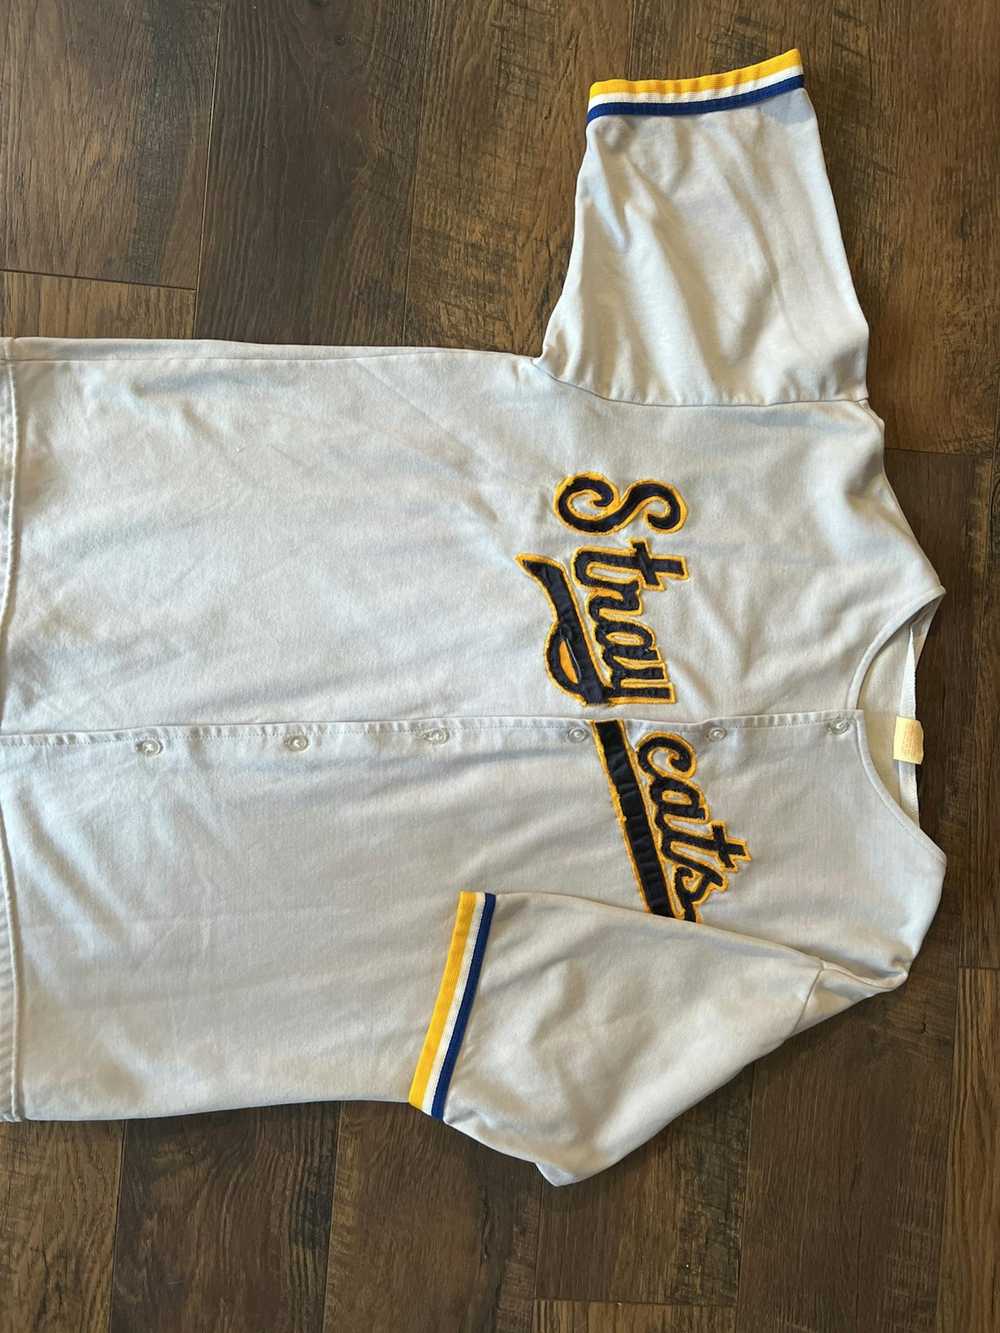 Vintage Vintage 70s single stitch softball jersey - image 1